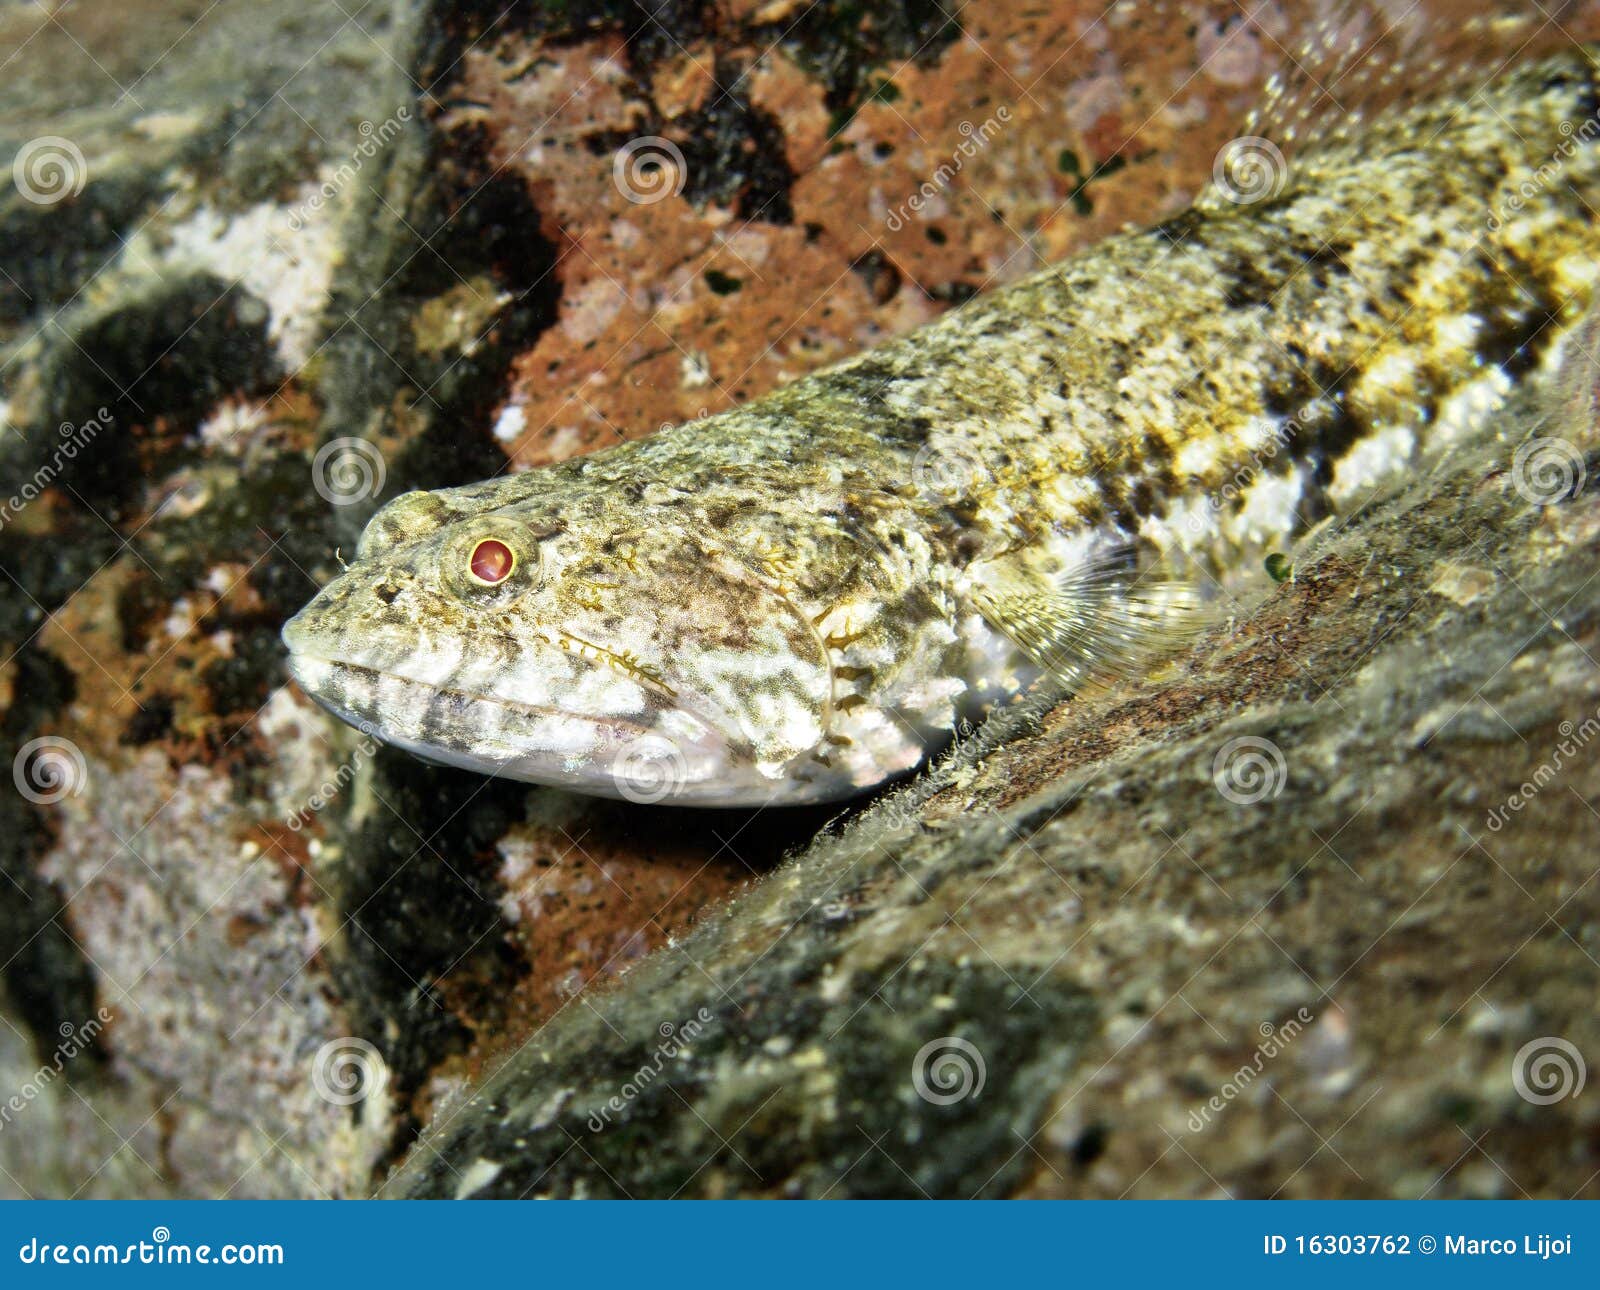 lizardfish (close up)